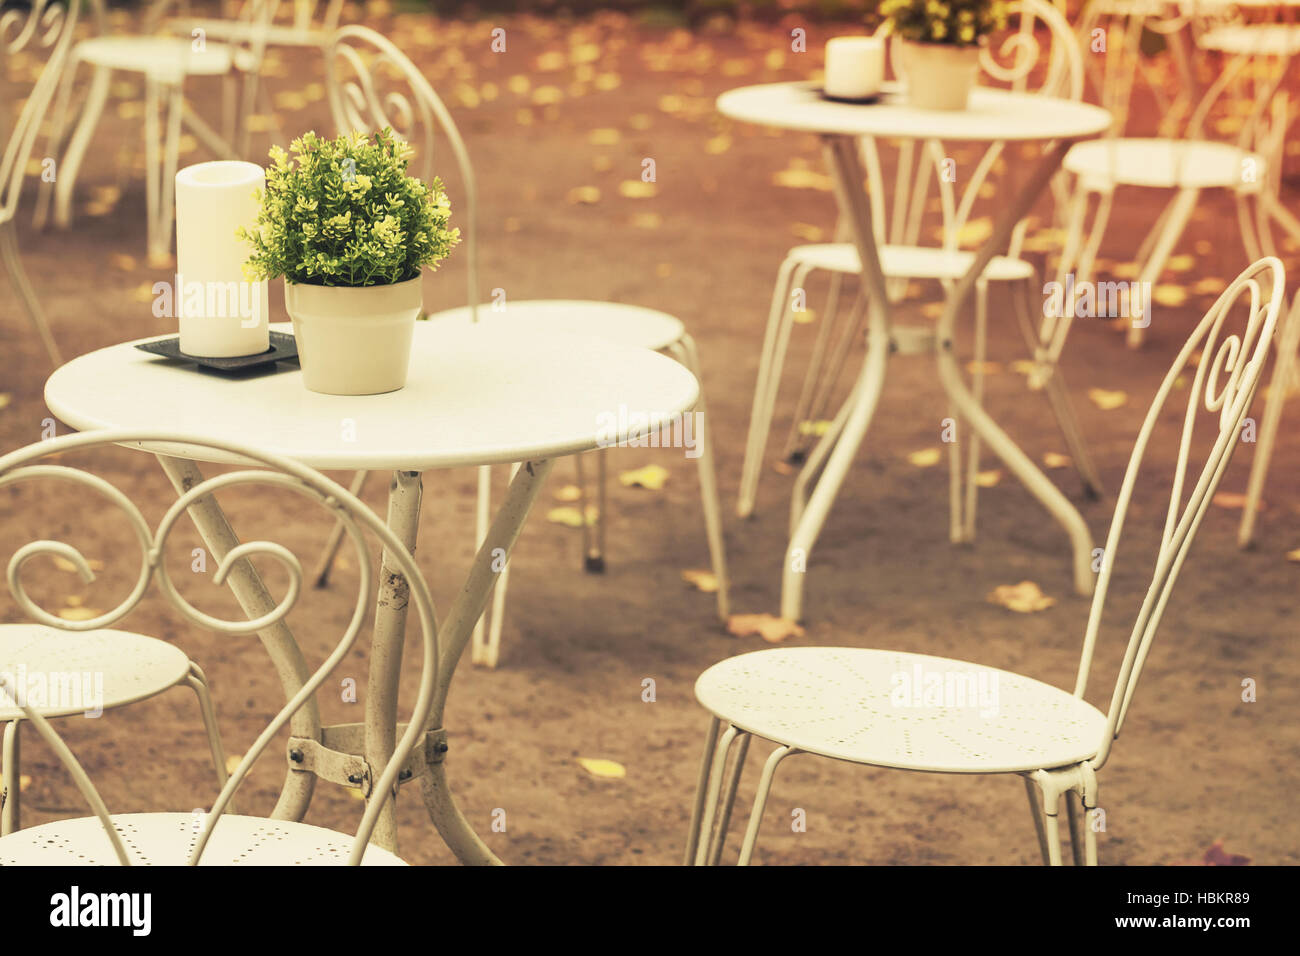 Cafetería exterior interior fondo de metal, sillas y mesas blancas con  decoración verde de las plantas en macetas y velas, vintage estilizado,  cálidas a fotos Fotografía de stock - Alamy